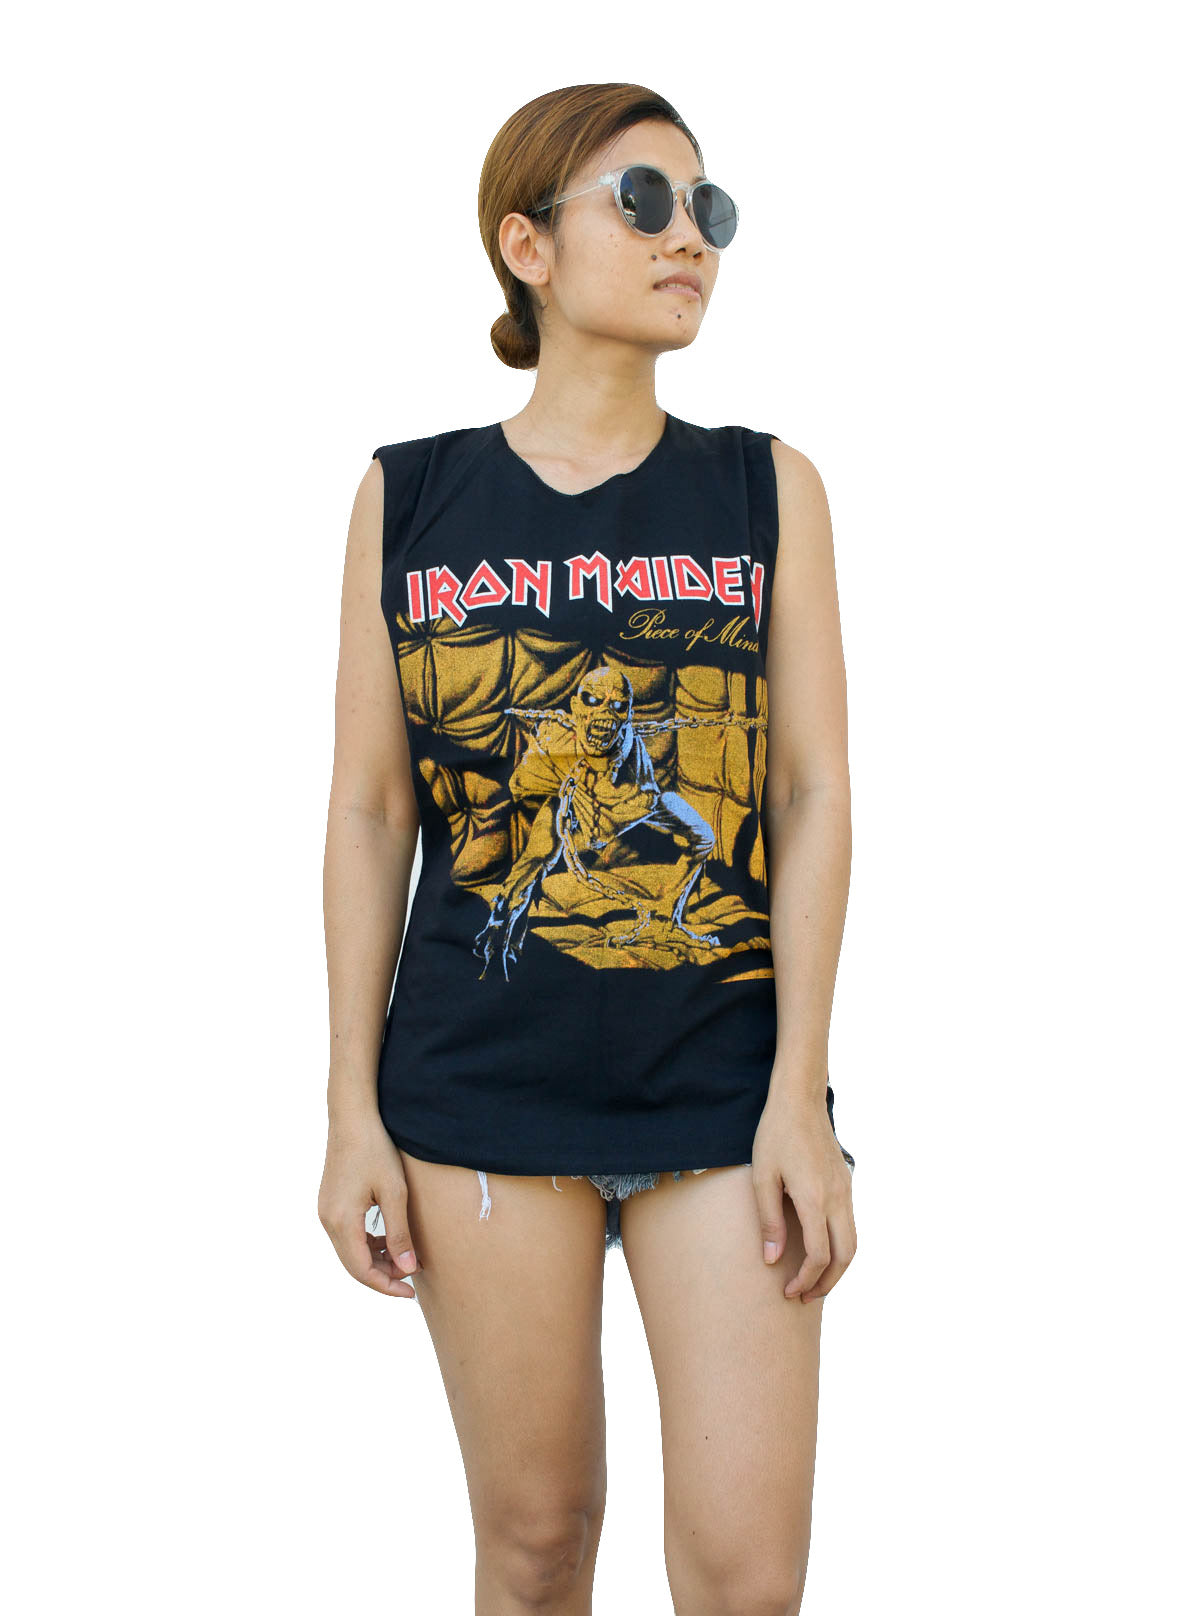 Ladies Iron Maiden Vest Tank-Top Singlet Sleeveless T-Shirt